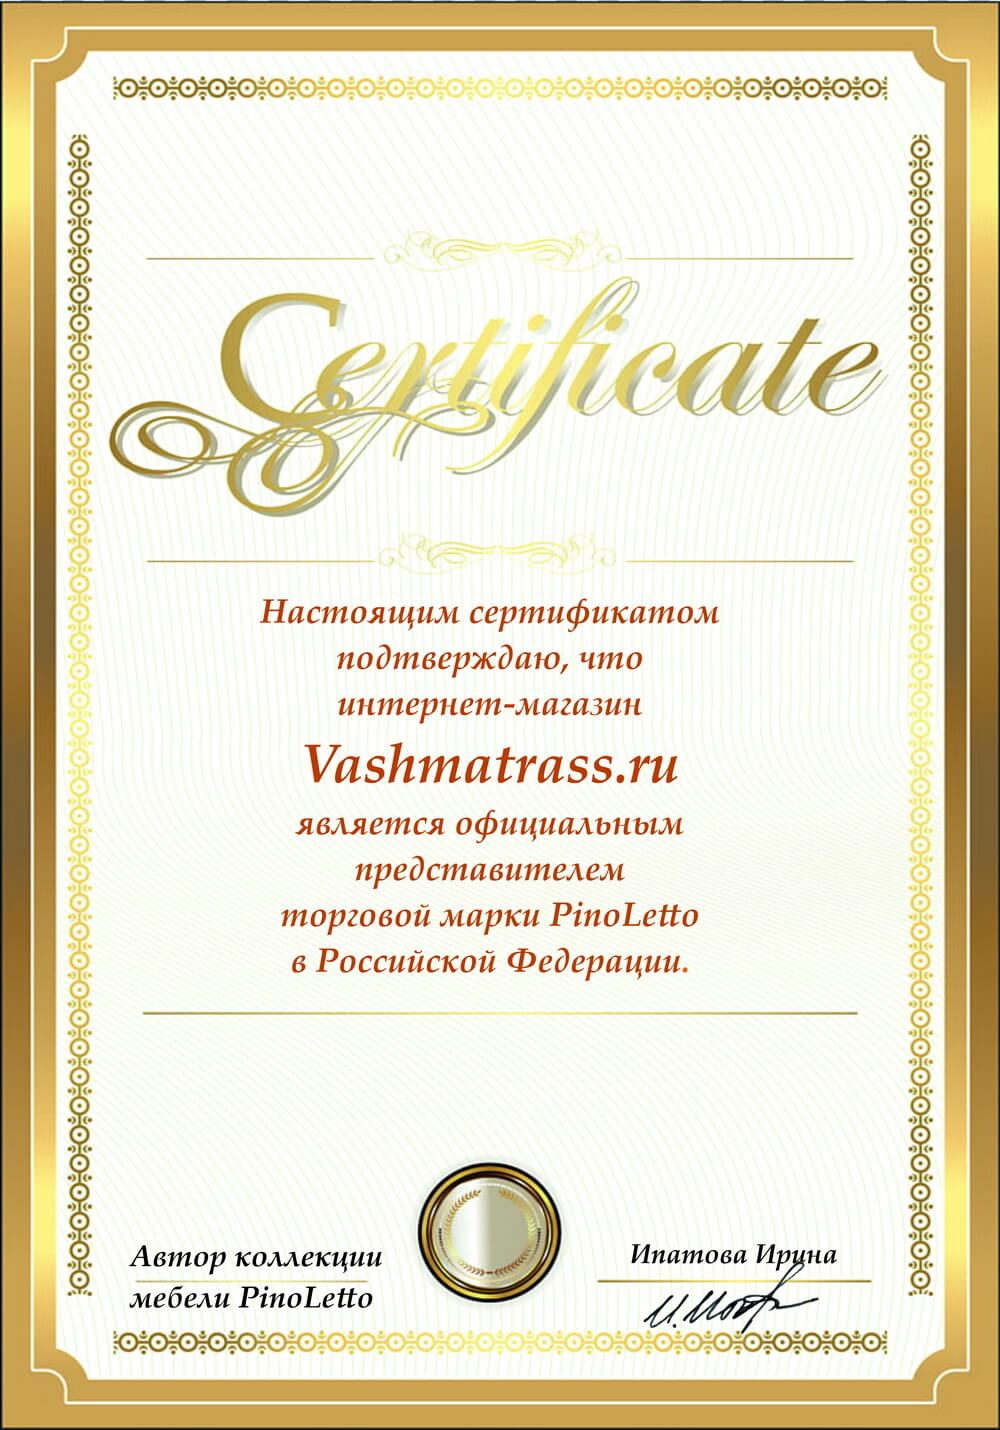 Сертификат дилера PinoLetto